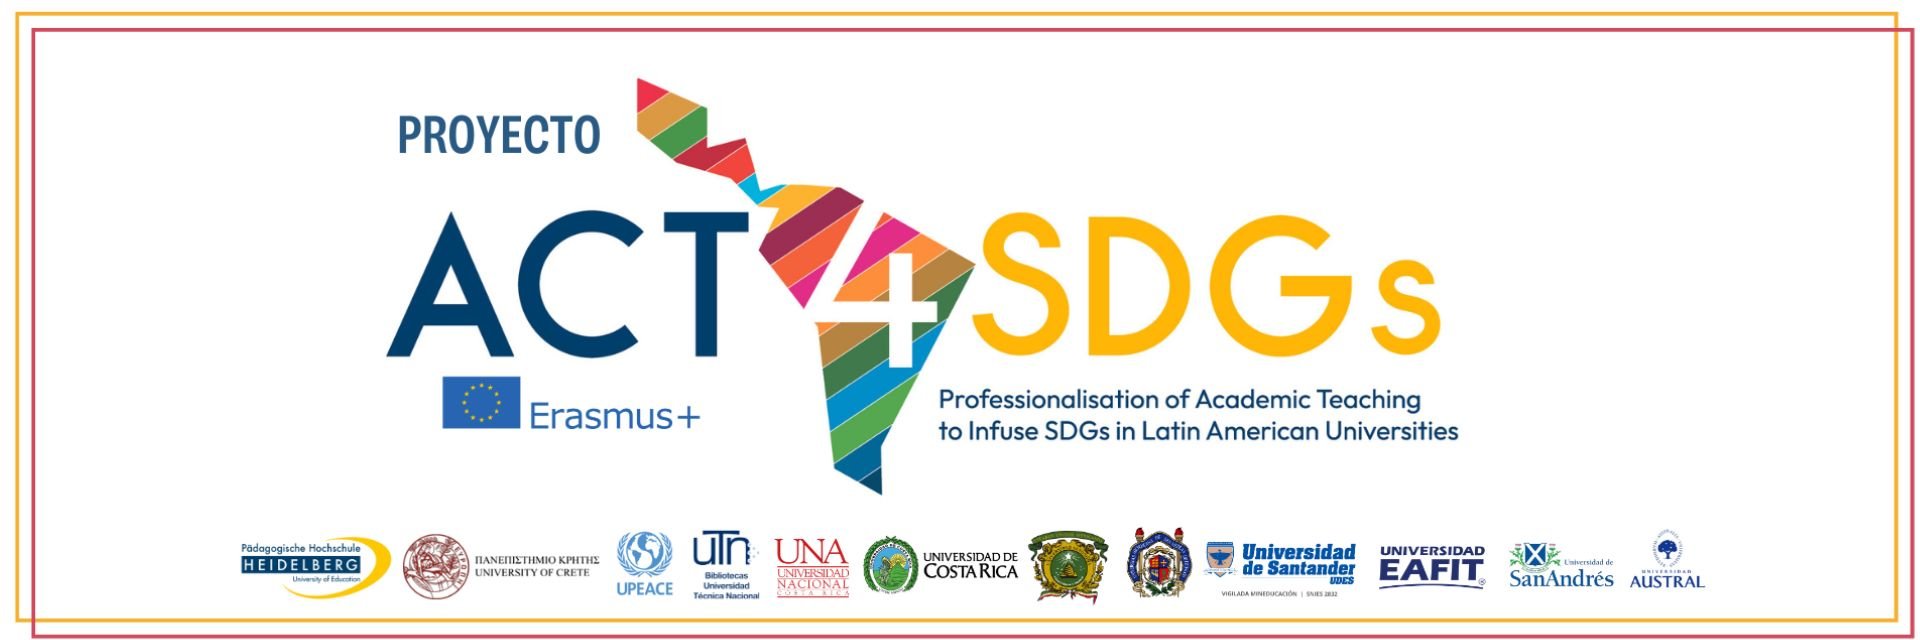 UDES se suma al proyecto ACT4SDGS para incorporar los Objetivos de Desarrollo Sostenible en universidades latinoamericanas